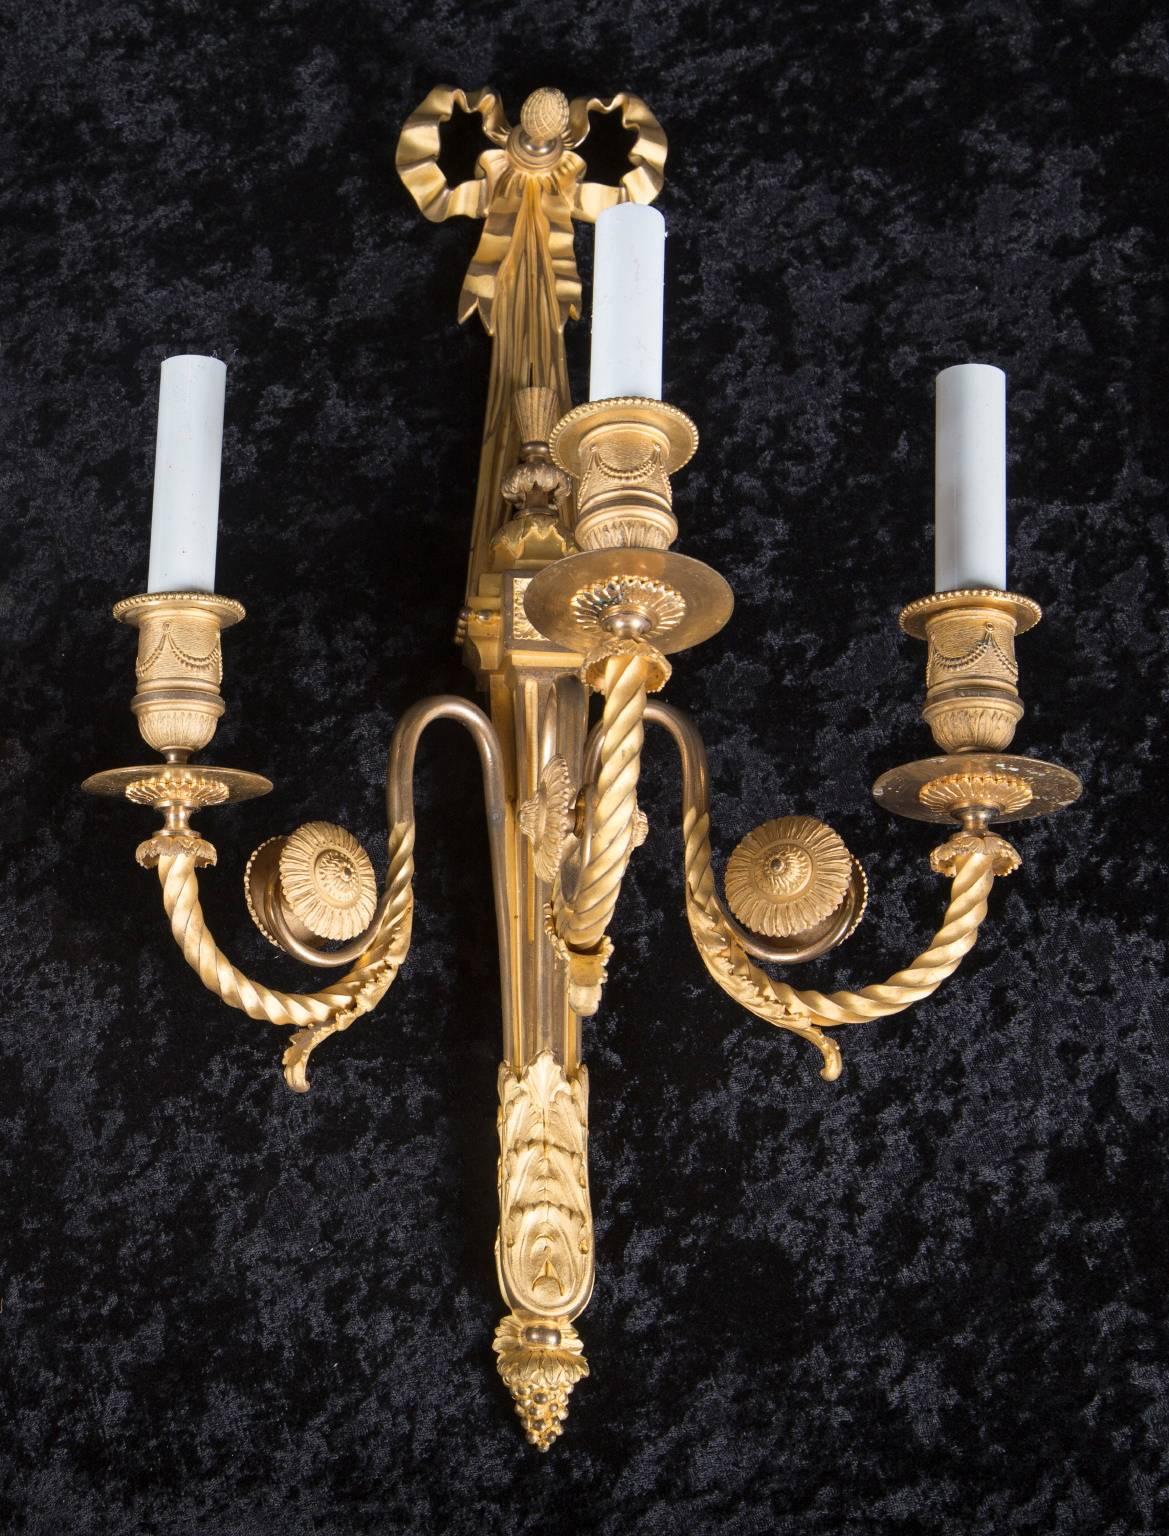 Cette paire d'appliques Louis XVI à 3 lumières, en bronze d'or fin et ciselé, date du 19e siècle. La paire d'antiquités françaises comprend des goutteurs perlés, des coupes de bougies ornées de guirlandes et des bobèches. Les bras tourbillonnants